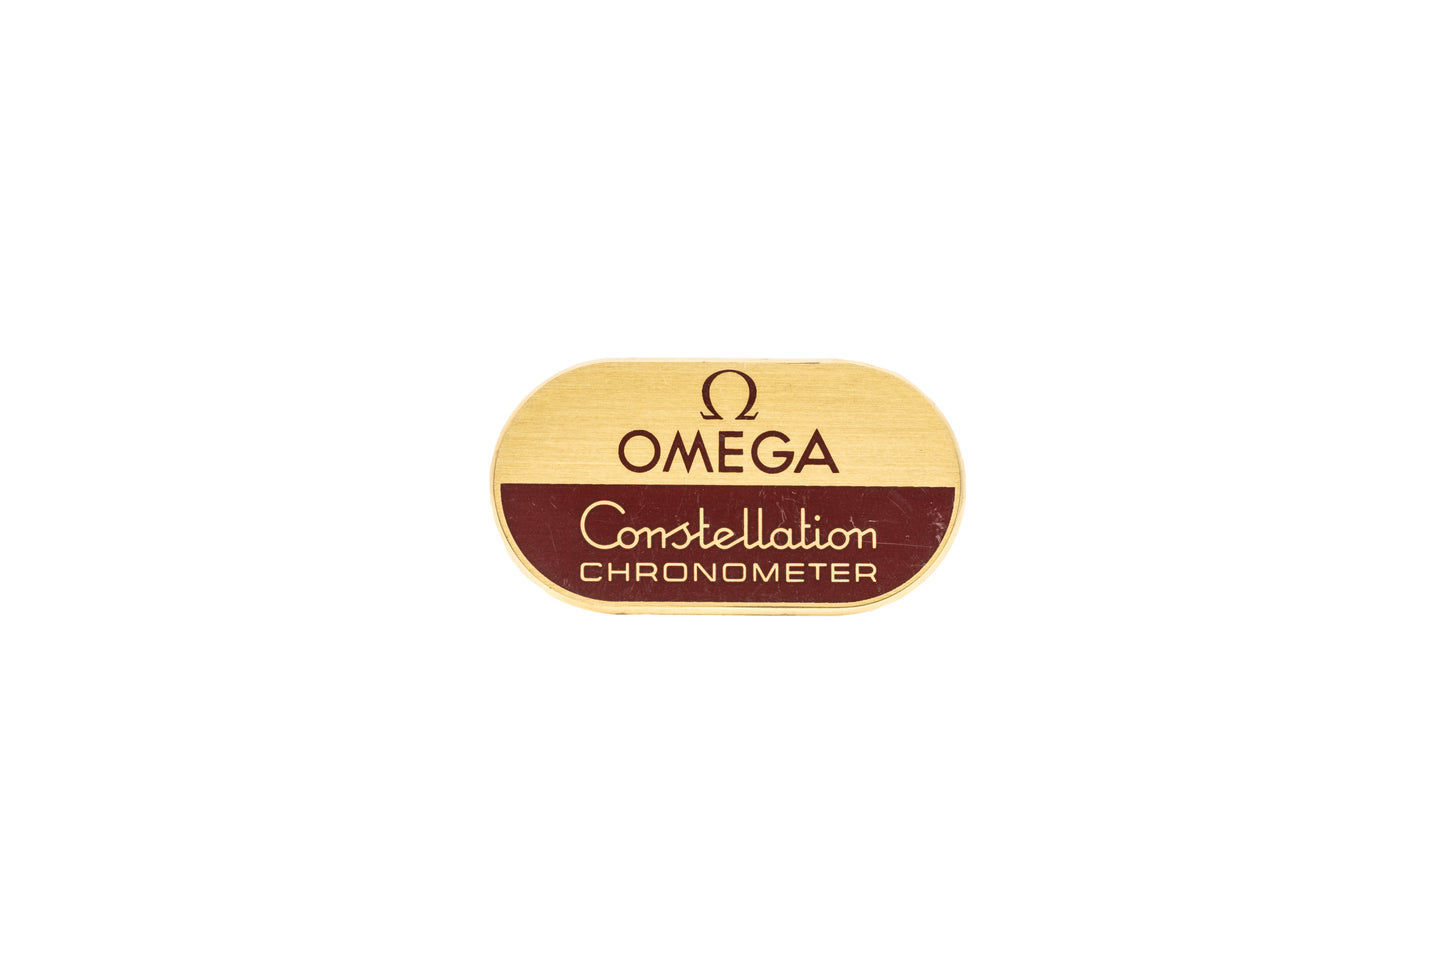 Omega Constellation Chronometer Signage